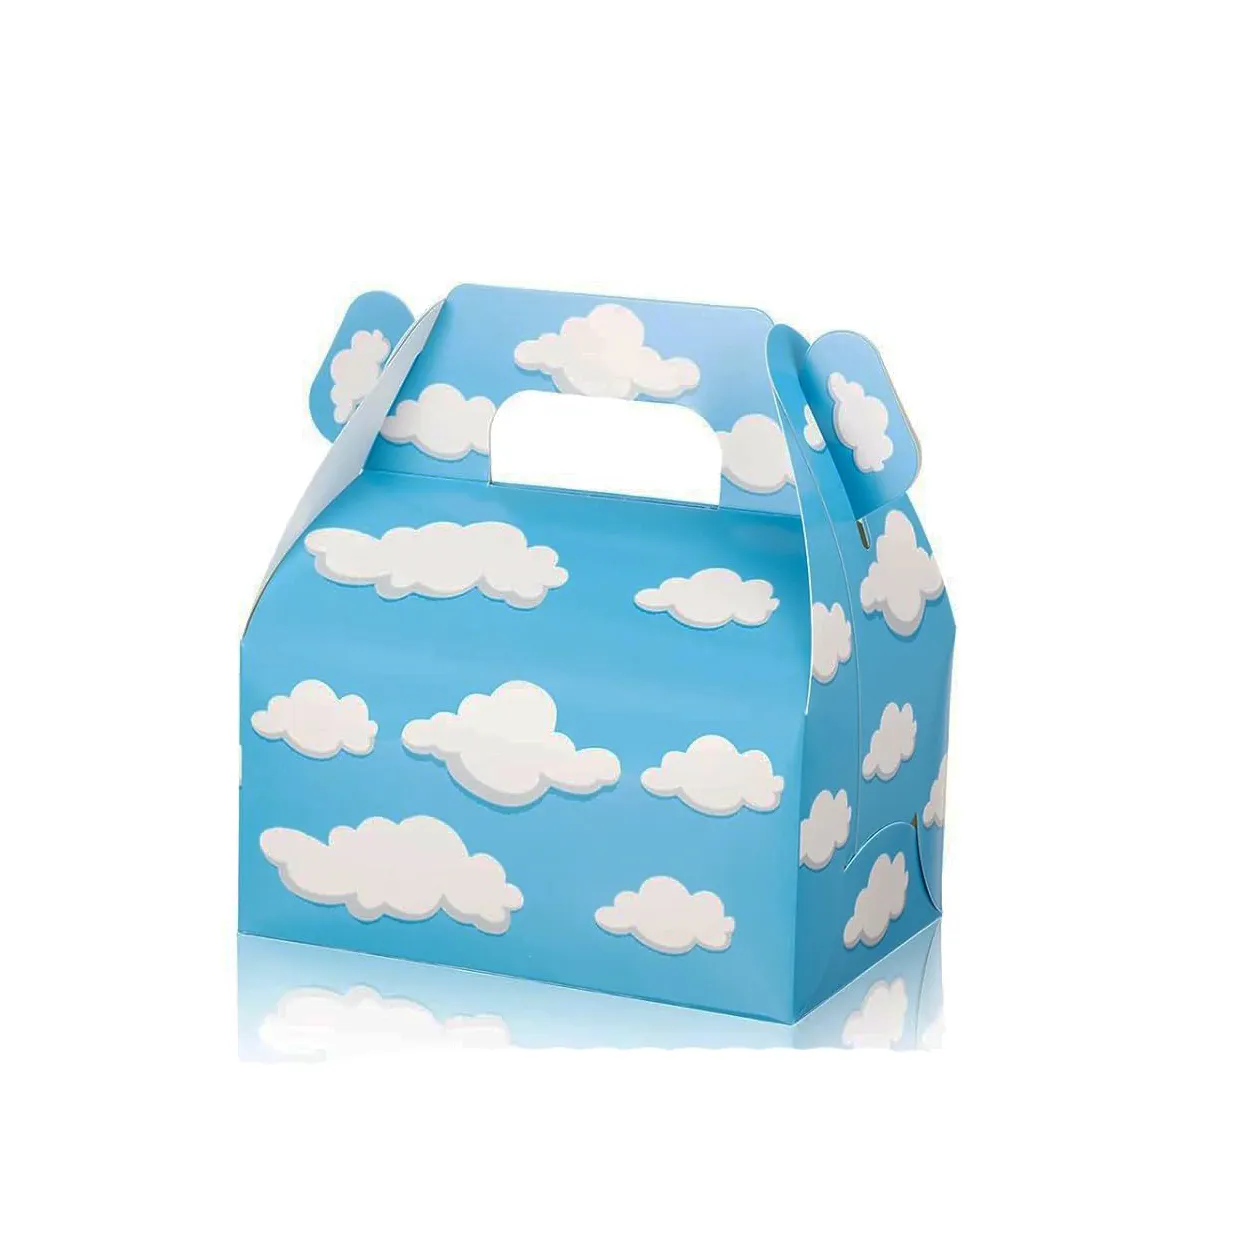 卸売キッズバースデーパーティー用品段ボール包装キャンディー青白雲パターンデザインポータブルキッズギフトボックスセット